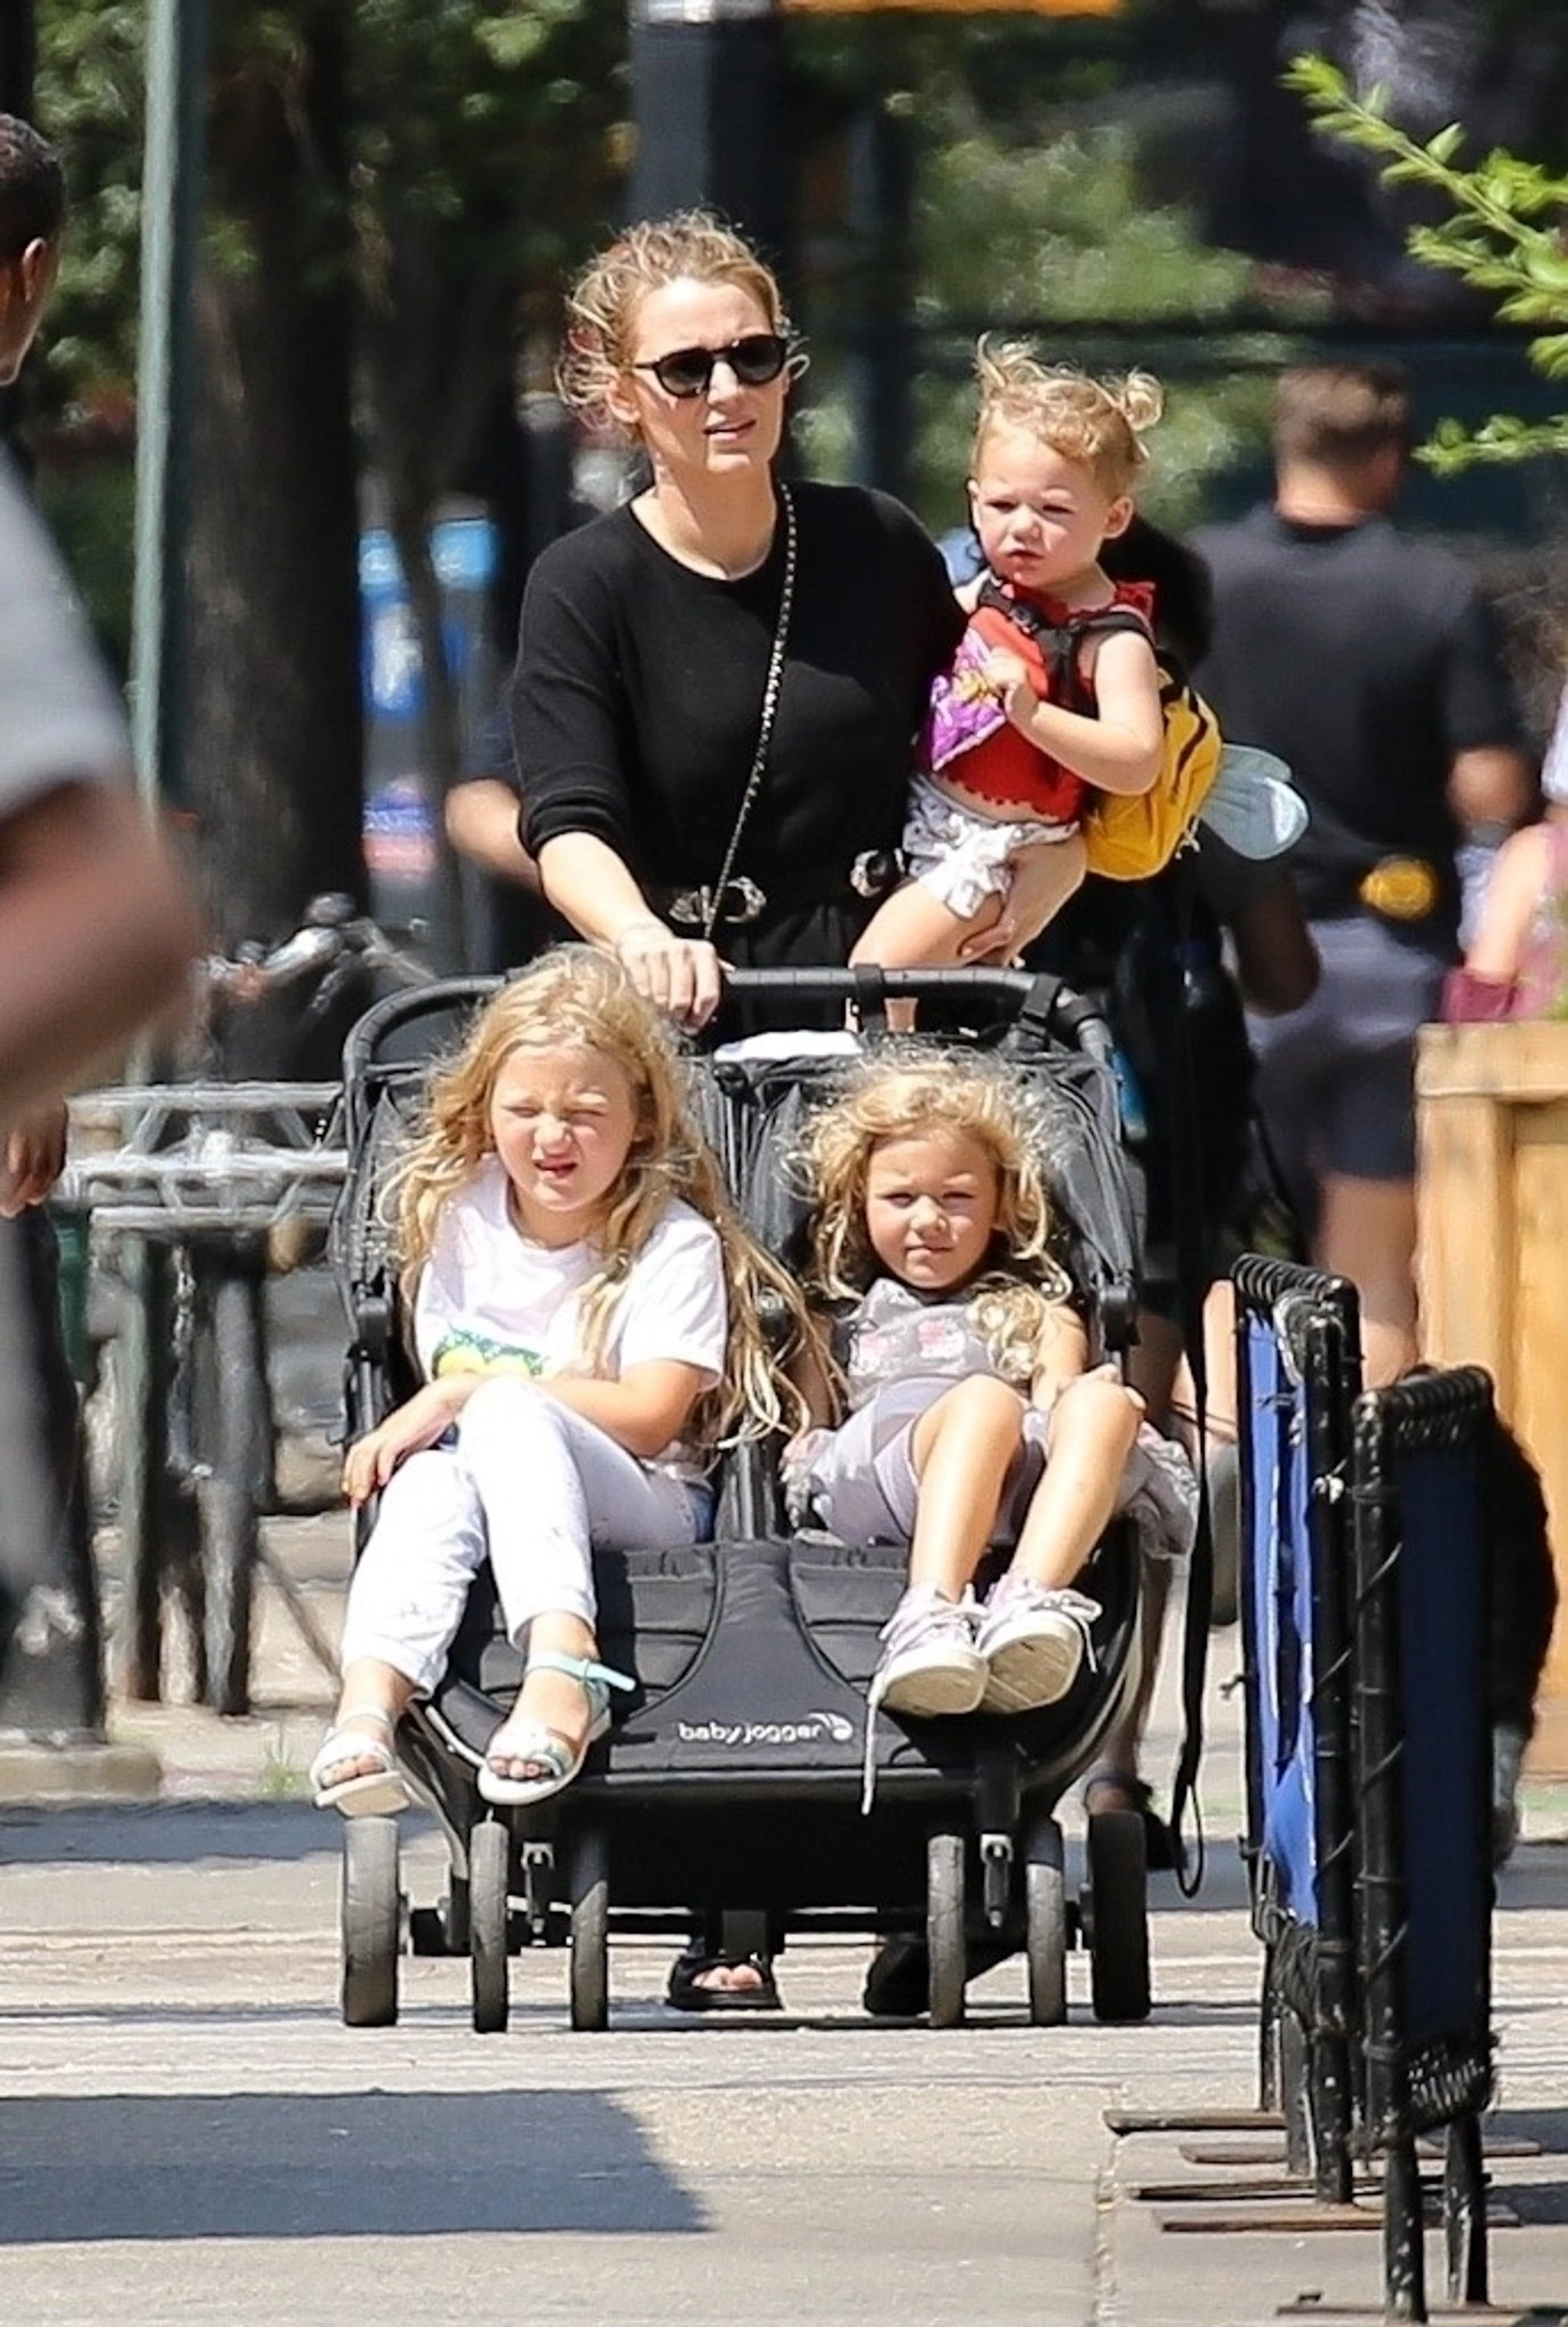 Блейк Лайвли гуляет по Нью-Йорку с тремя дочерьми
Фото: radiobase101